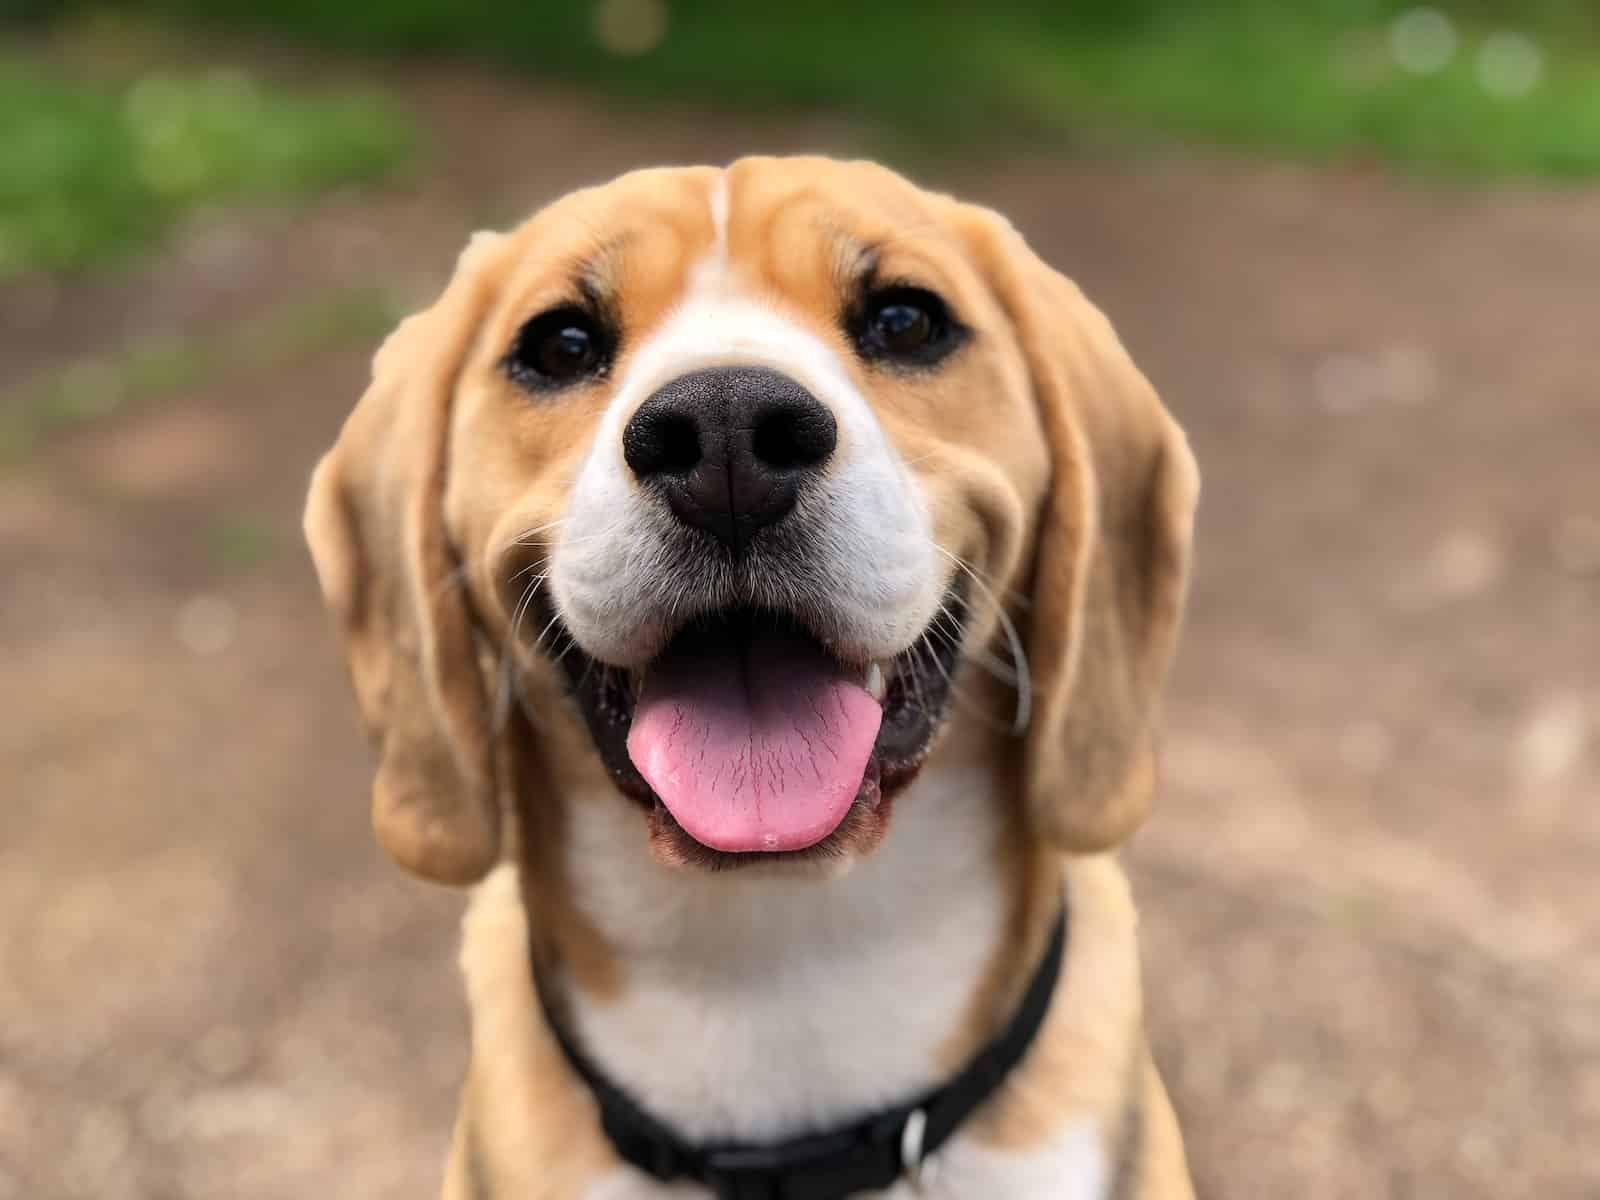 A happy dog